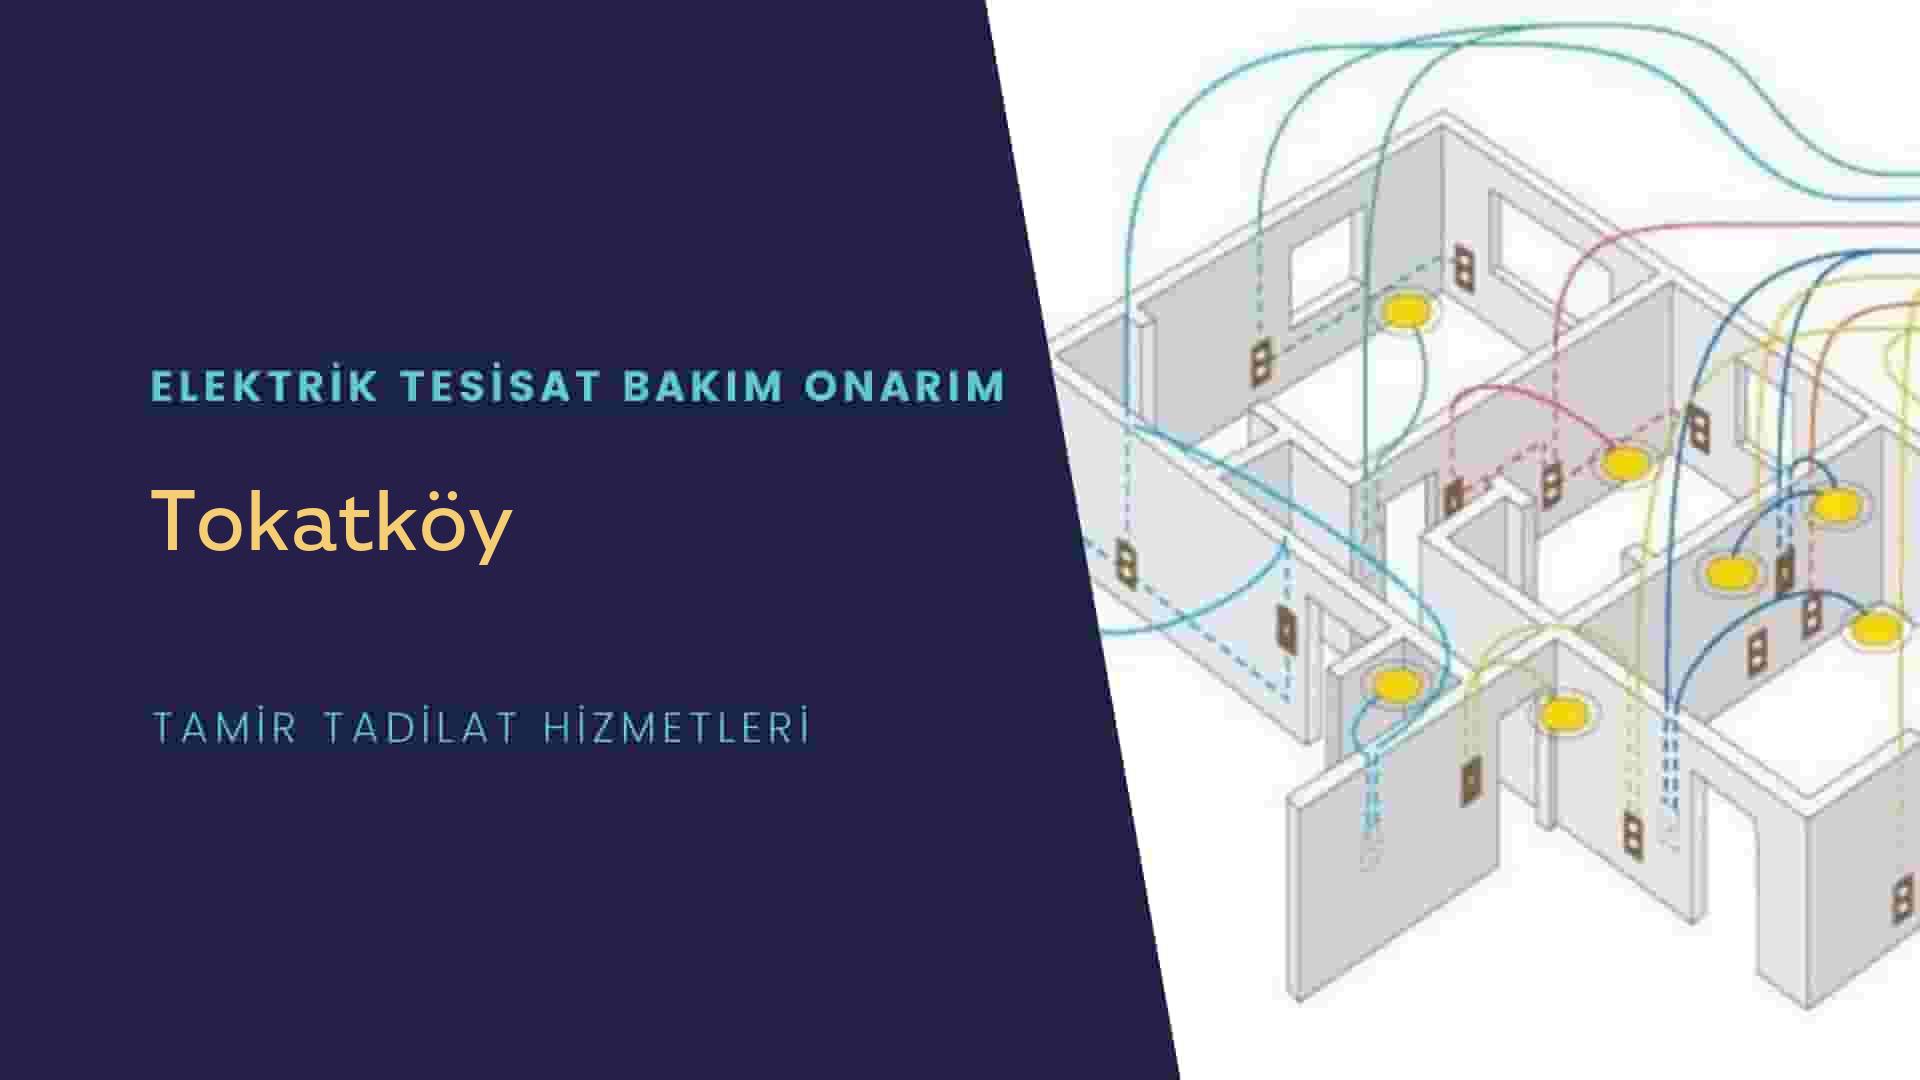 Tokatköy'de elektrik tesisatı ustalarımı arıyorsunuz doğru adrestenizi Tokatköy elektrik tesisatı ustalarımız 7/24 sizlere hizmet vermekten mutluluk duyar.